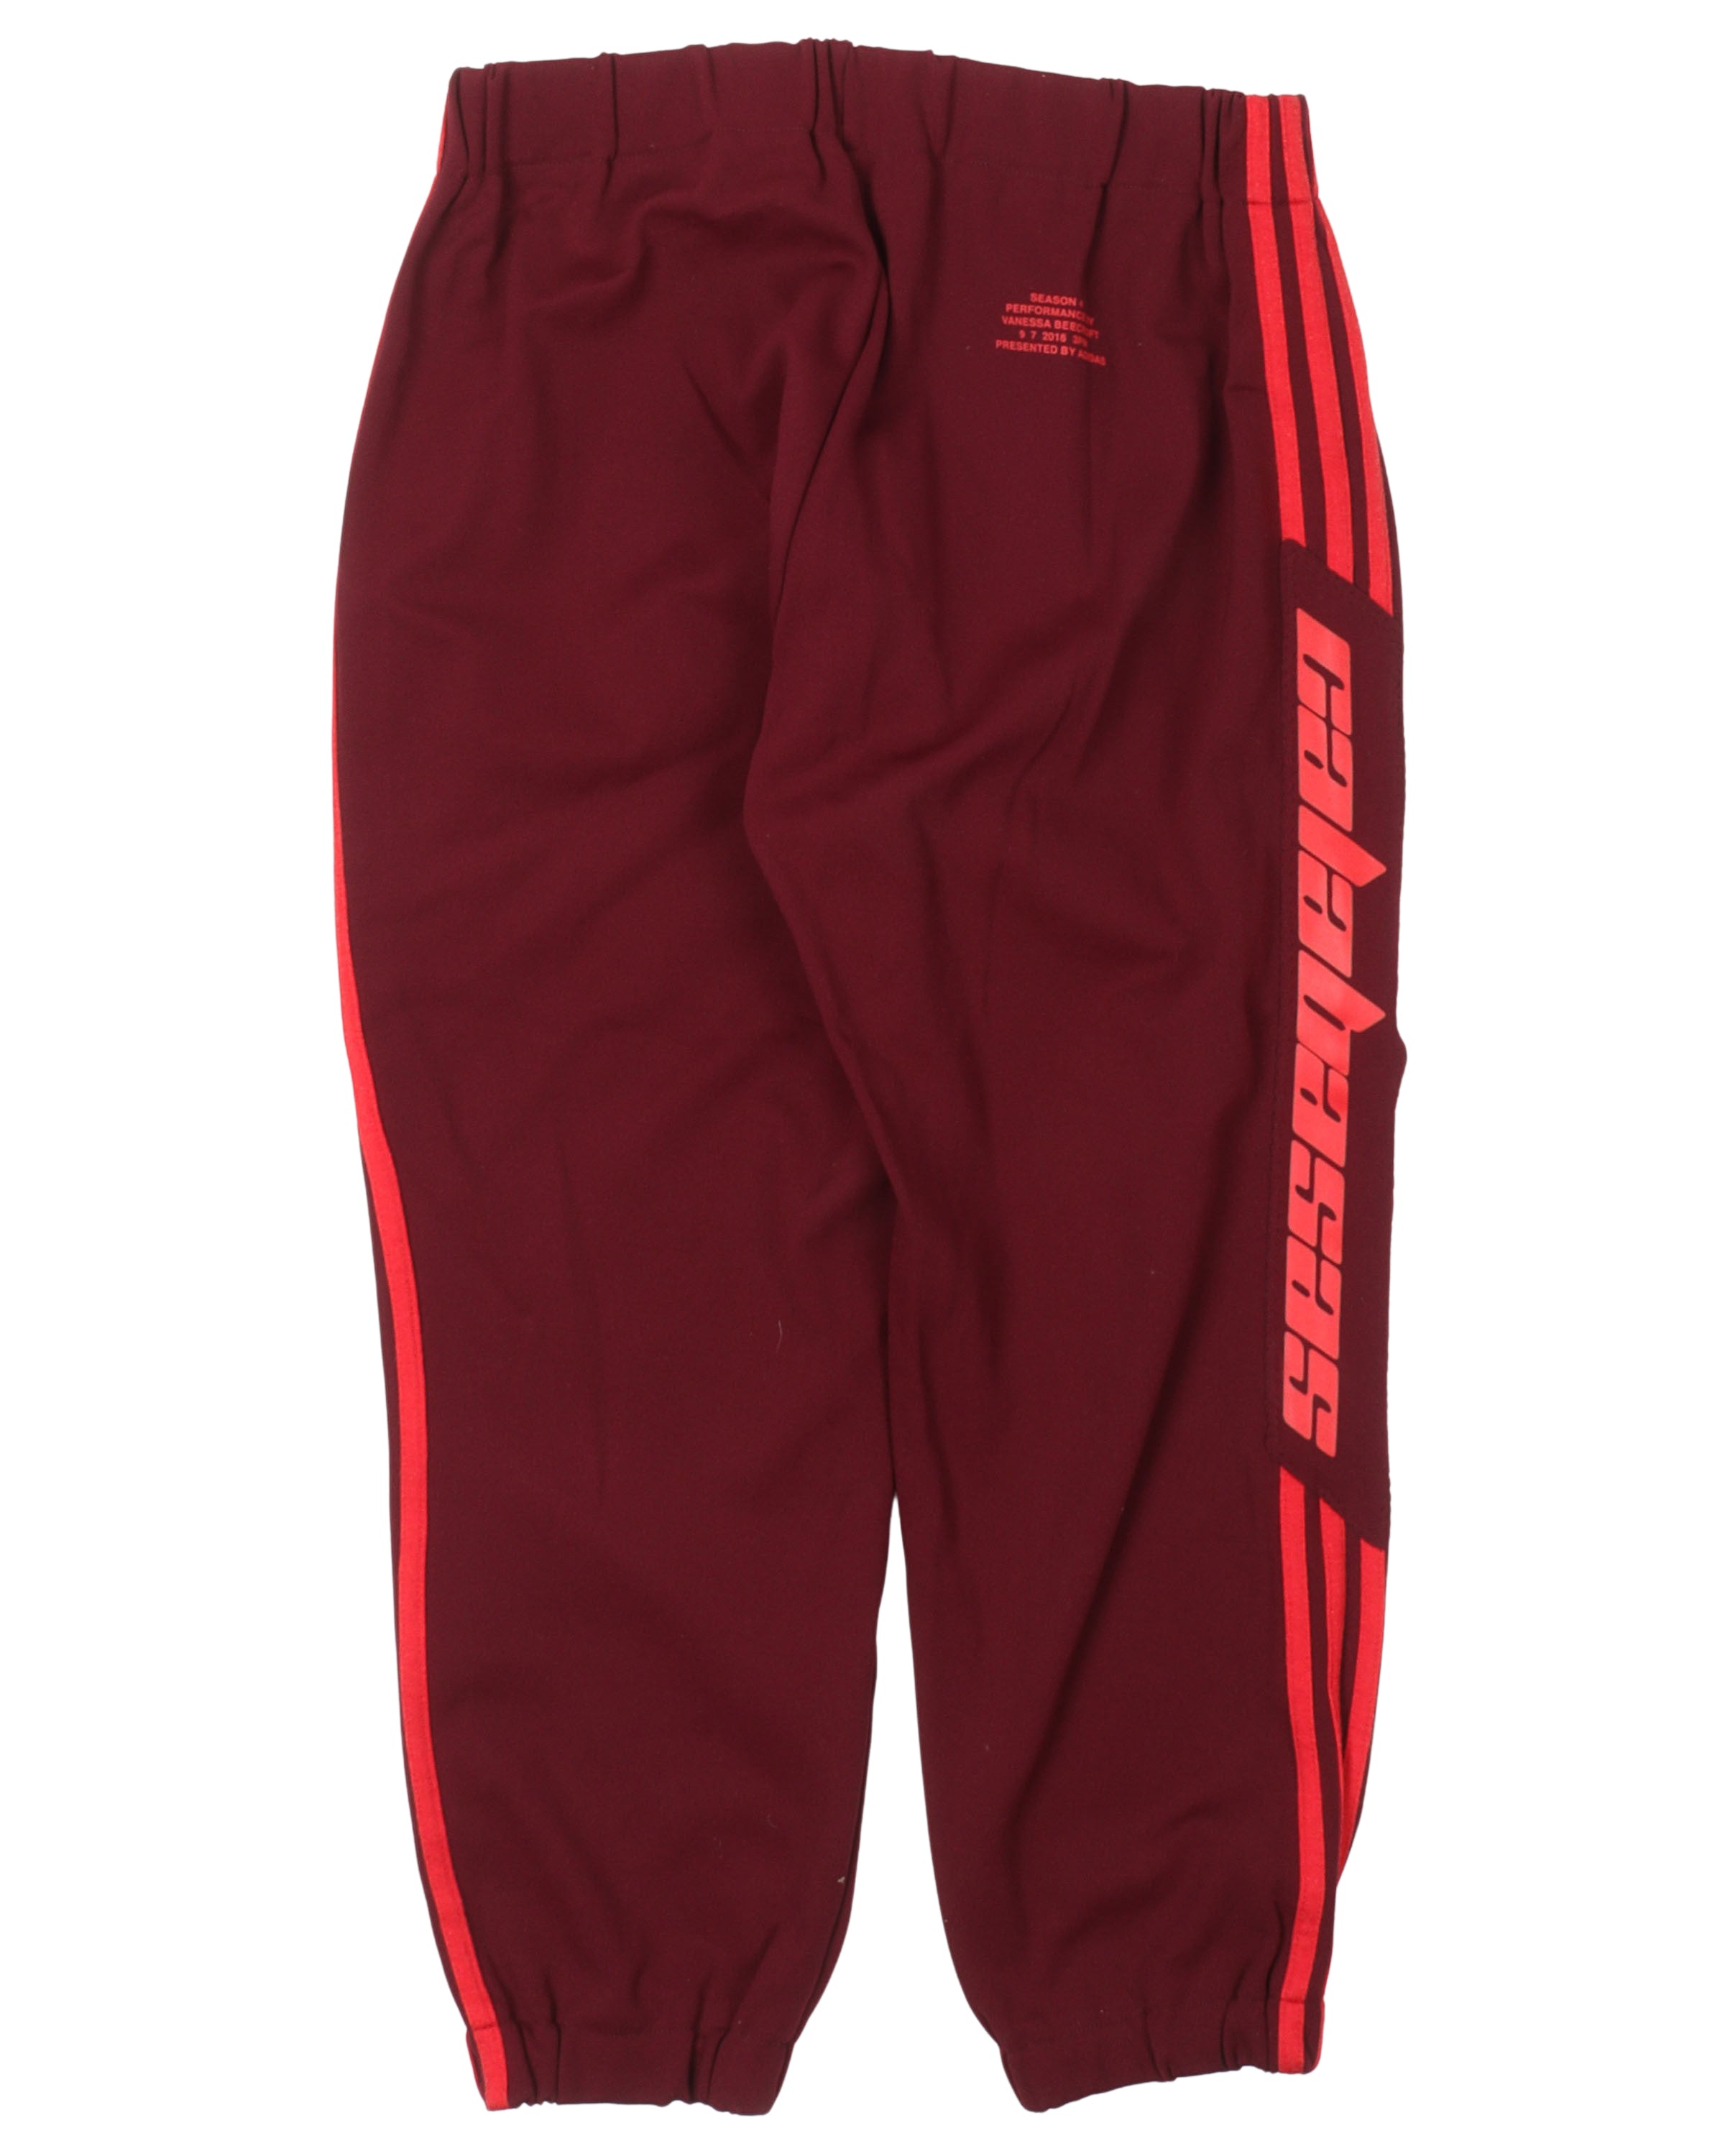 Yeezy Adidas Calabasas Striped Jogger Pants